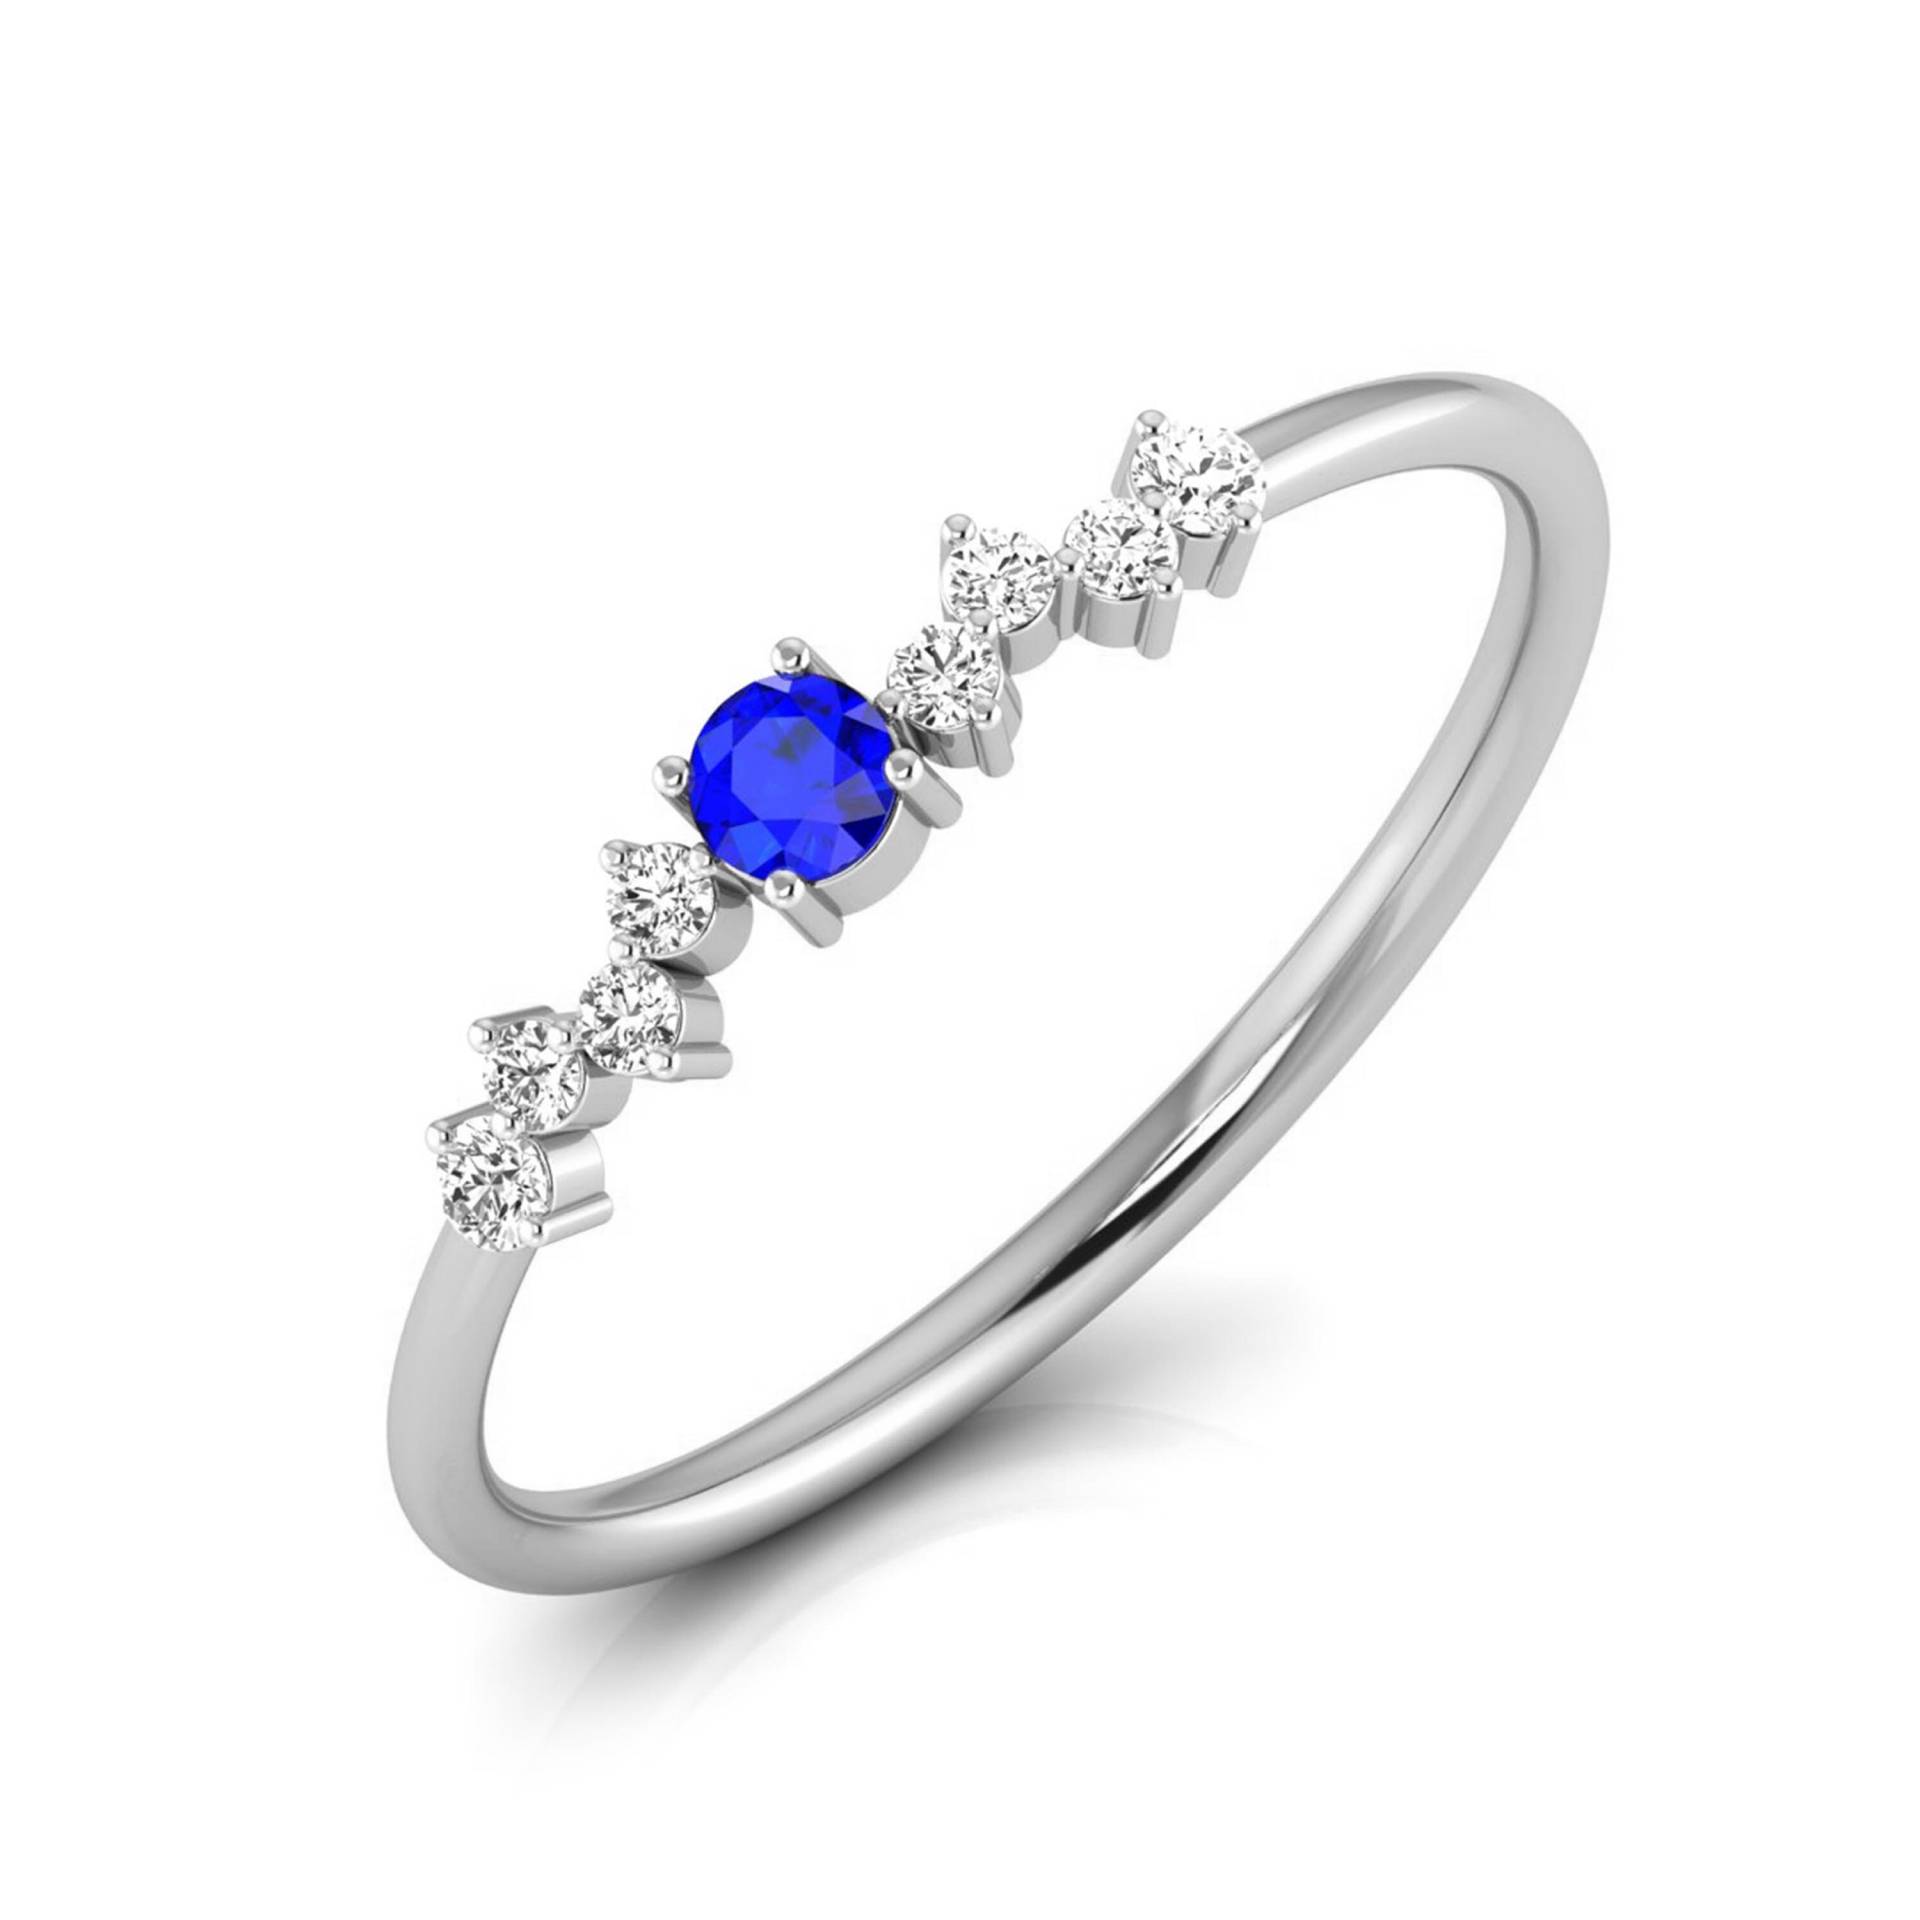 Blauer Saphir Platin Diamant Verlobungsring Jl Pt Lr 7003 von Jewelove